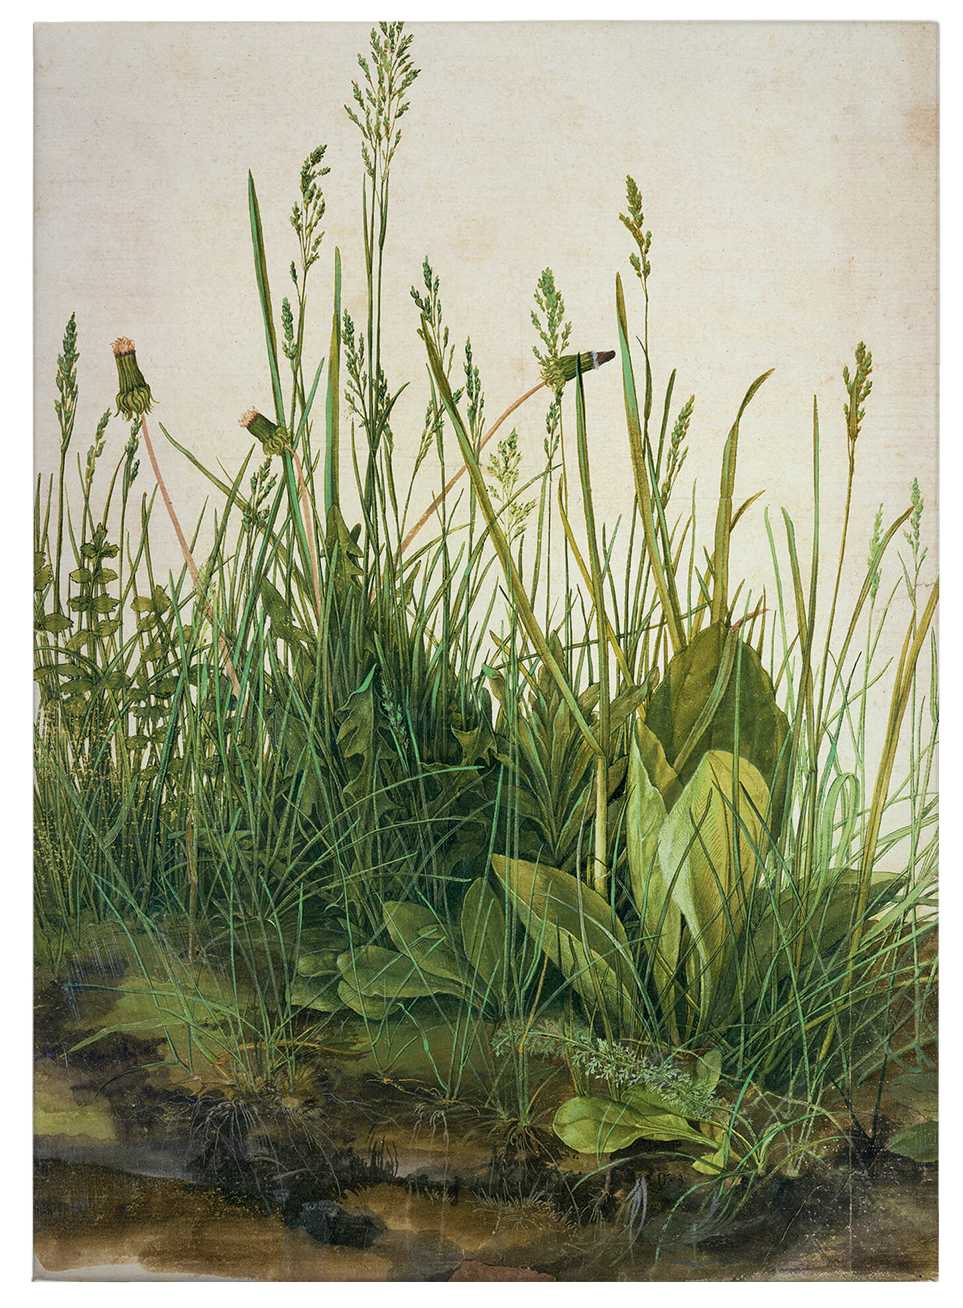             Leinwandbild "Der große Rasen" von Dürer – 0,50 m x 0,70 m
        